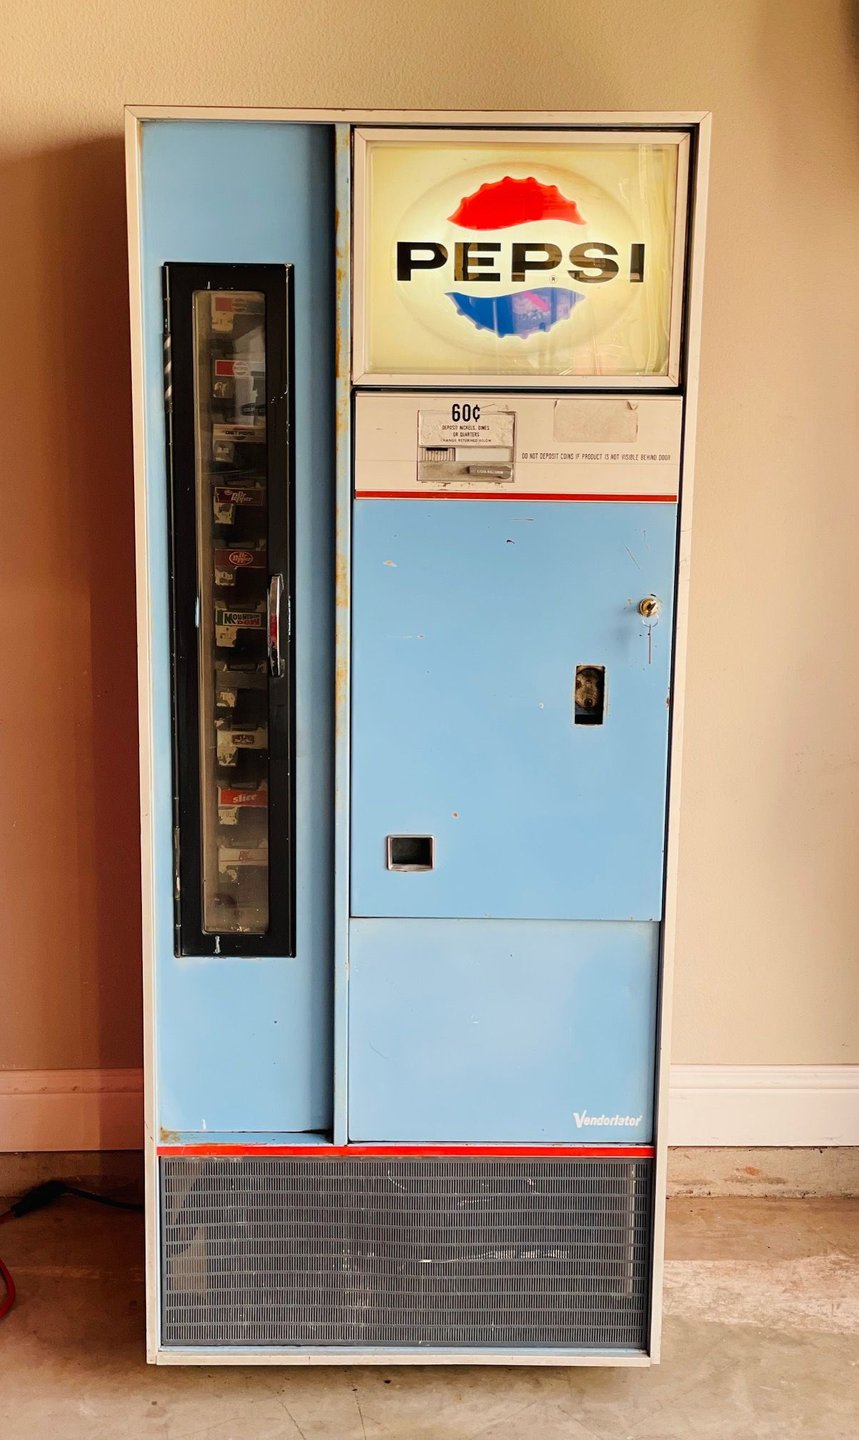 1960 pepsi vending machine